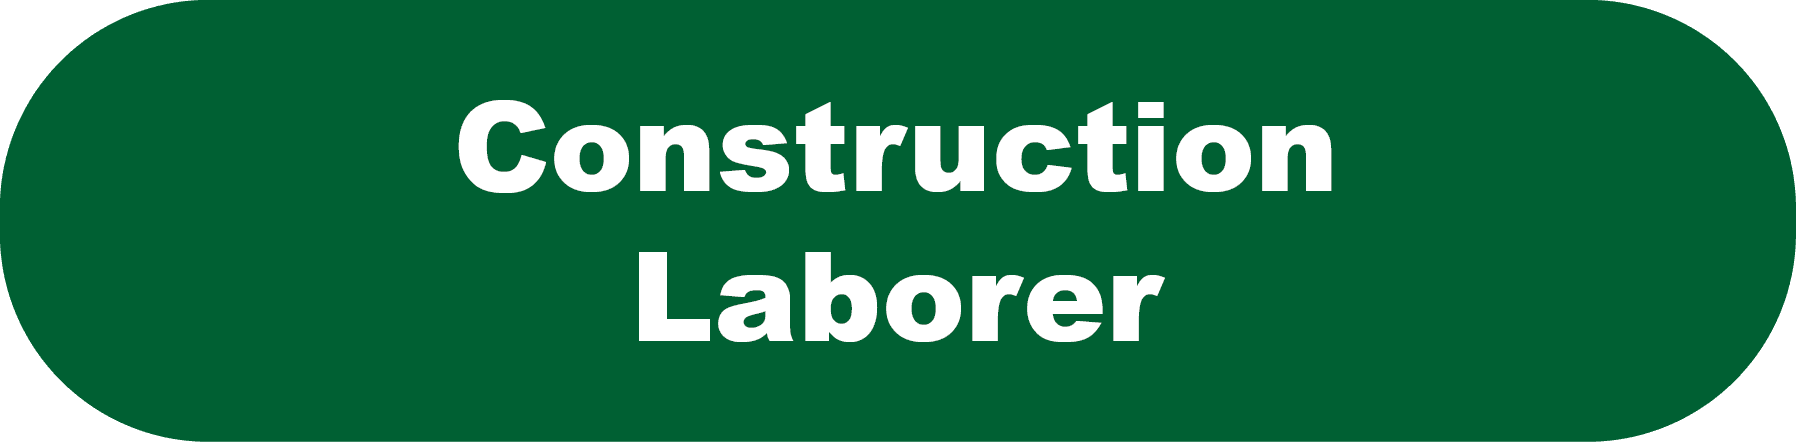 Construction Laborer